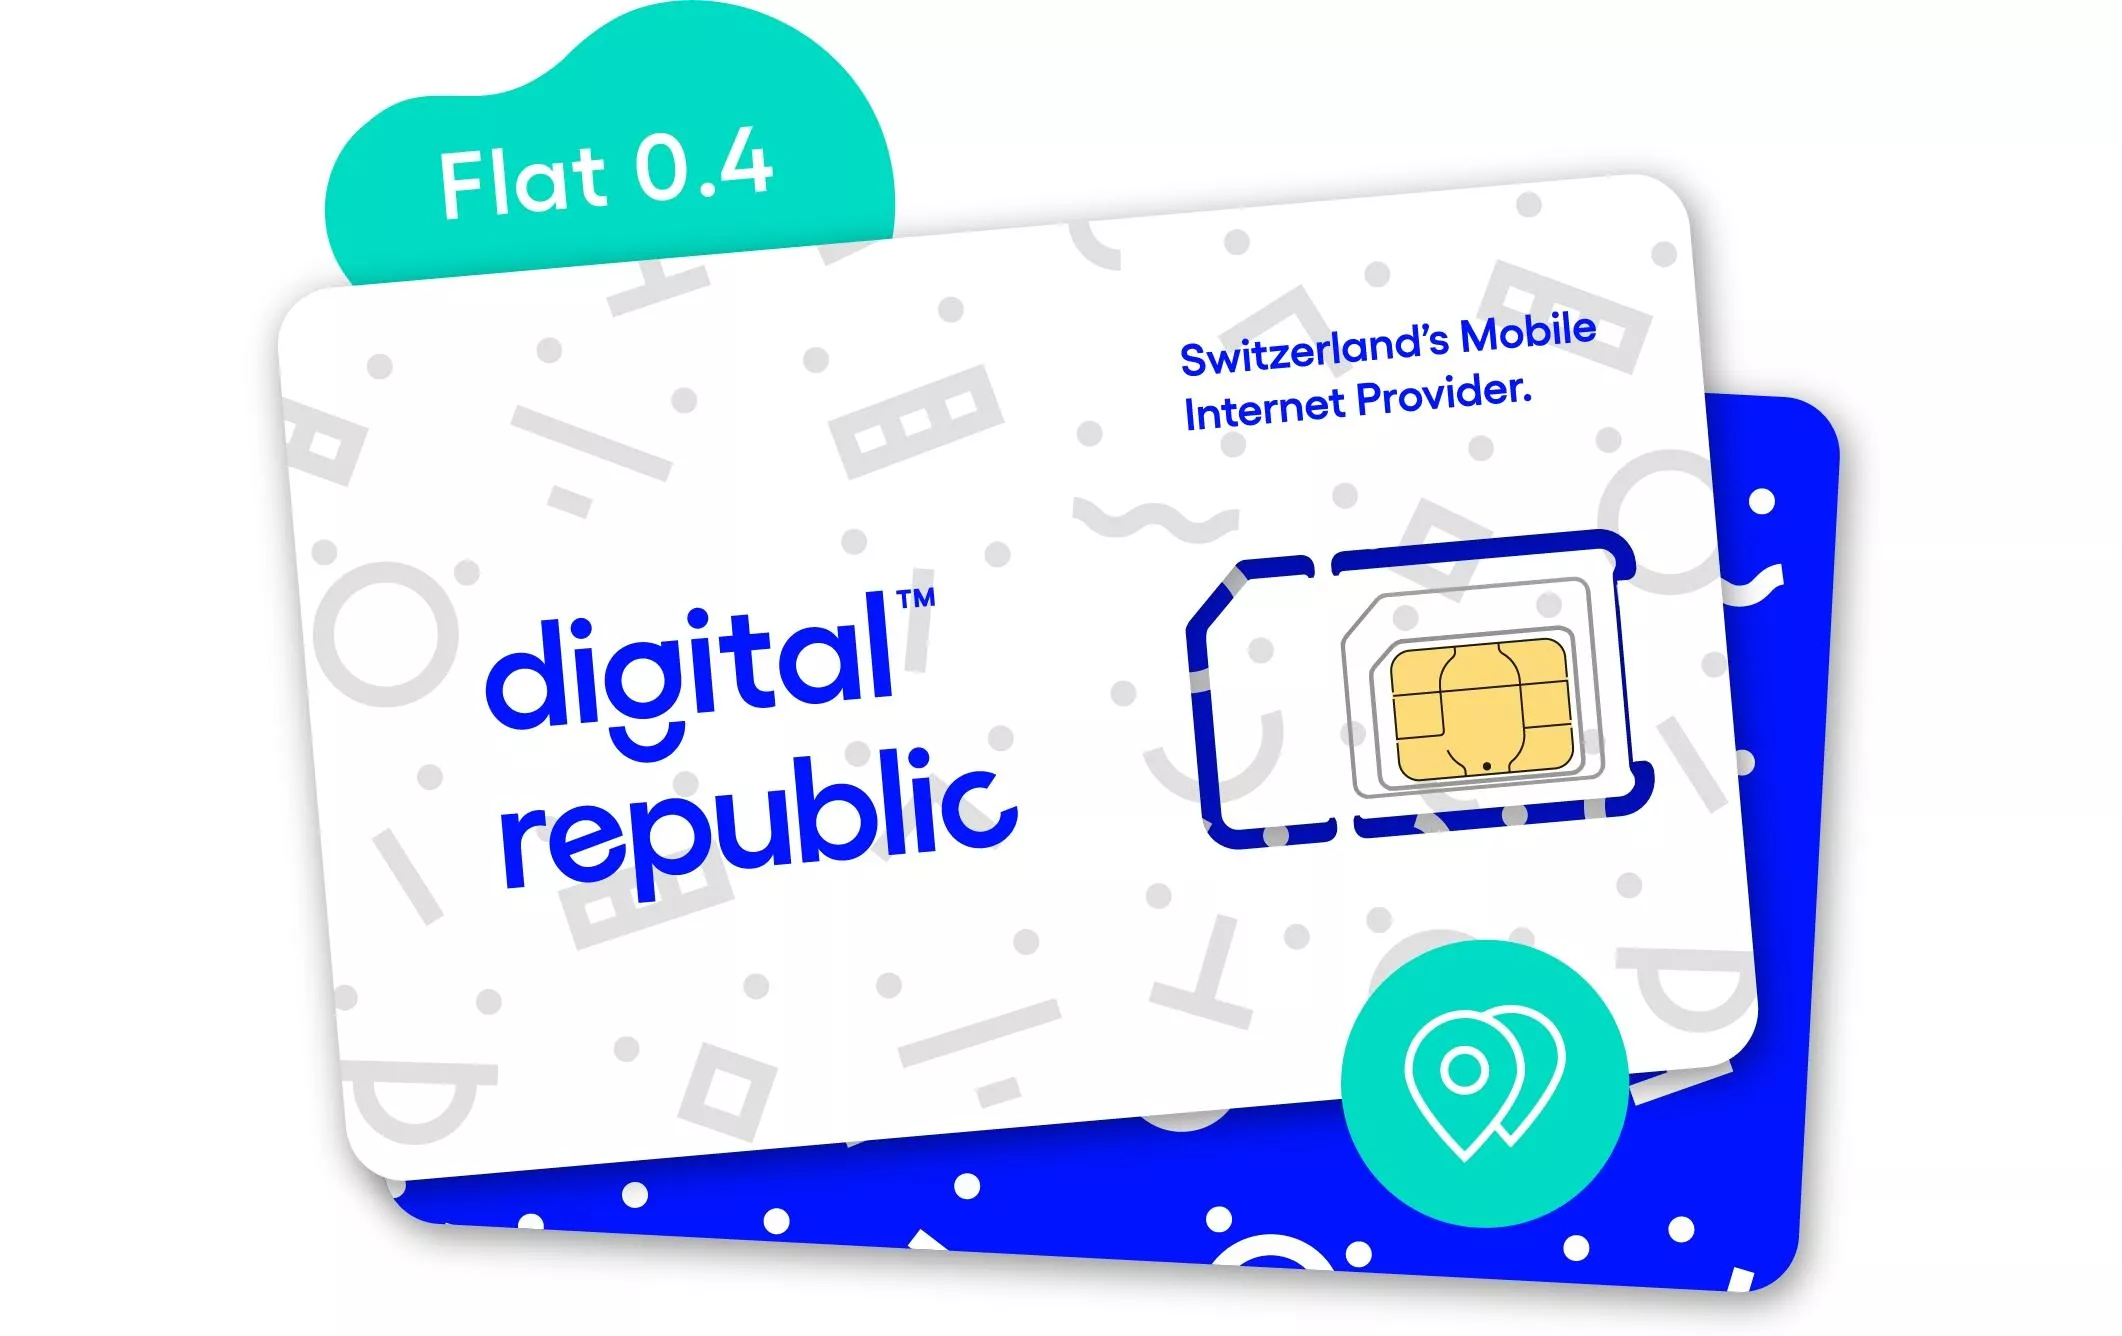 SIM Card Internet illimitato per 30 giorni - Bassa velocità